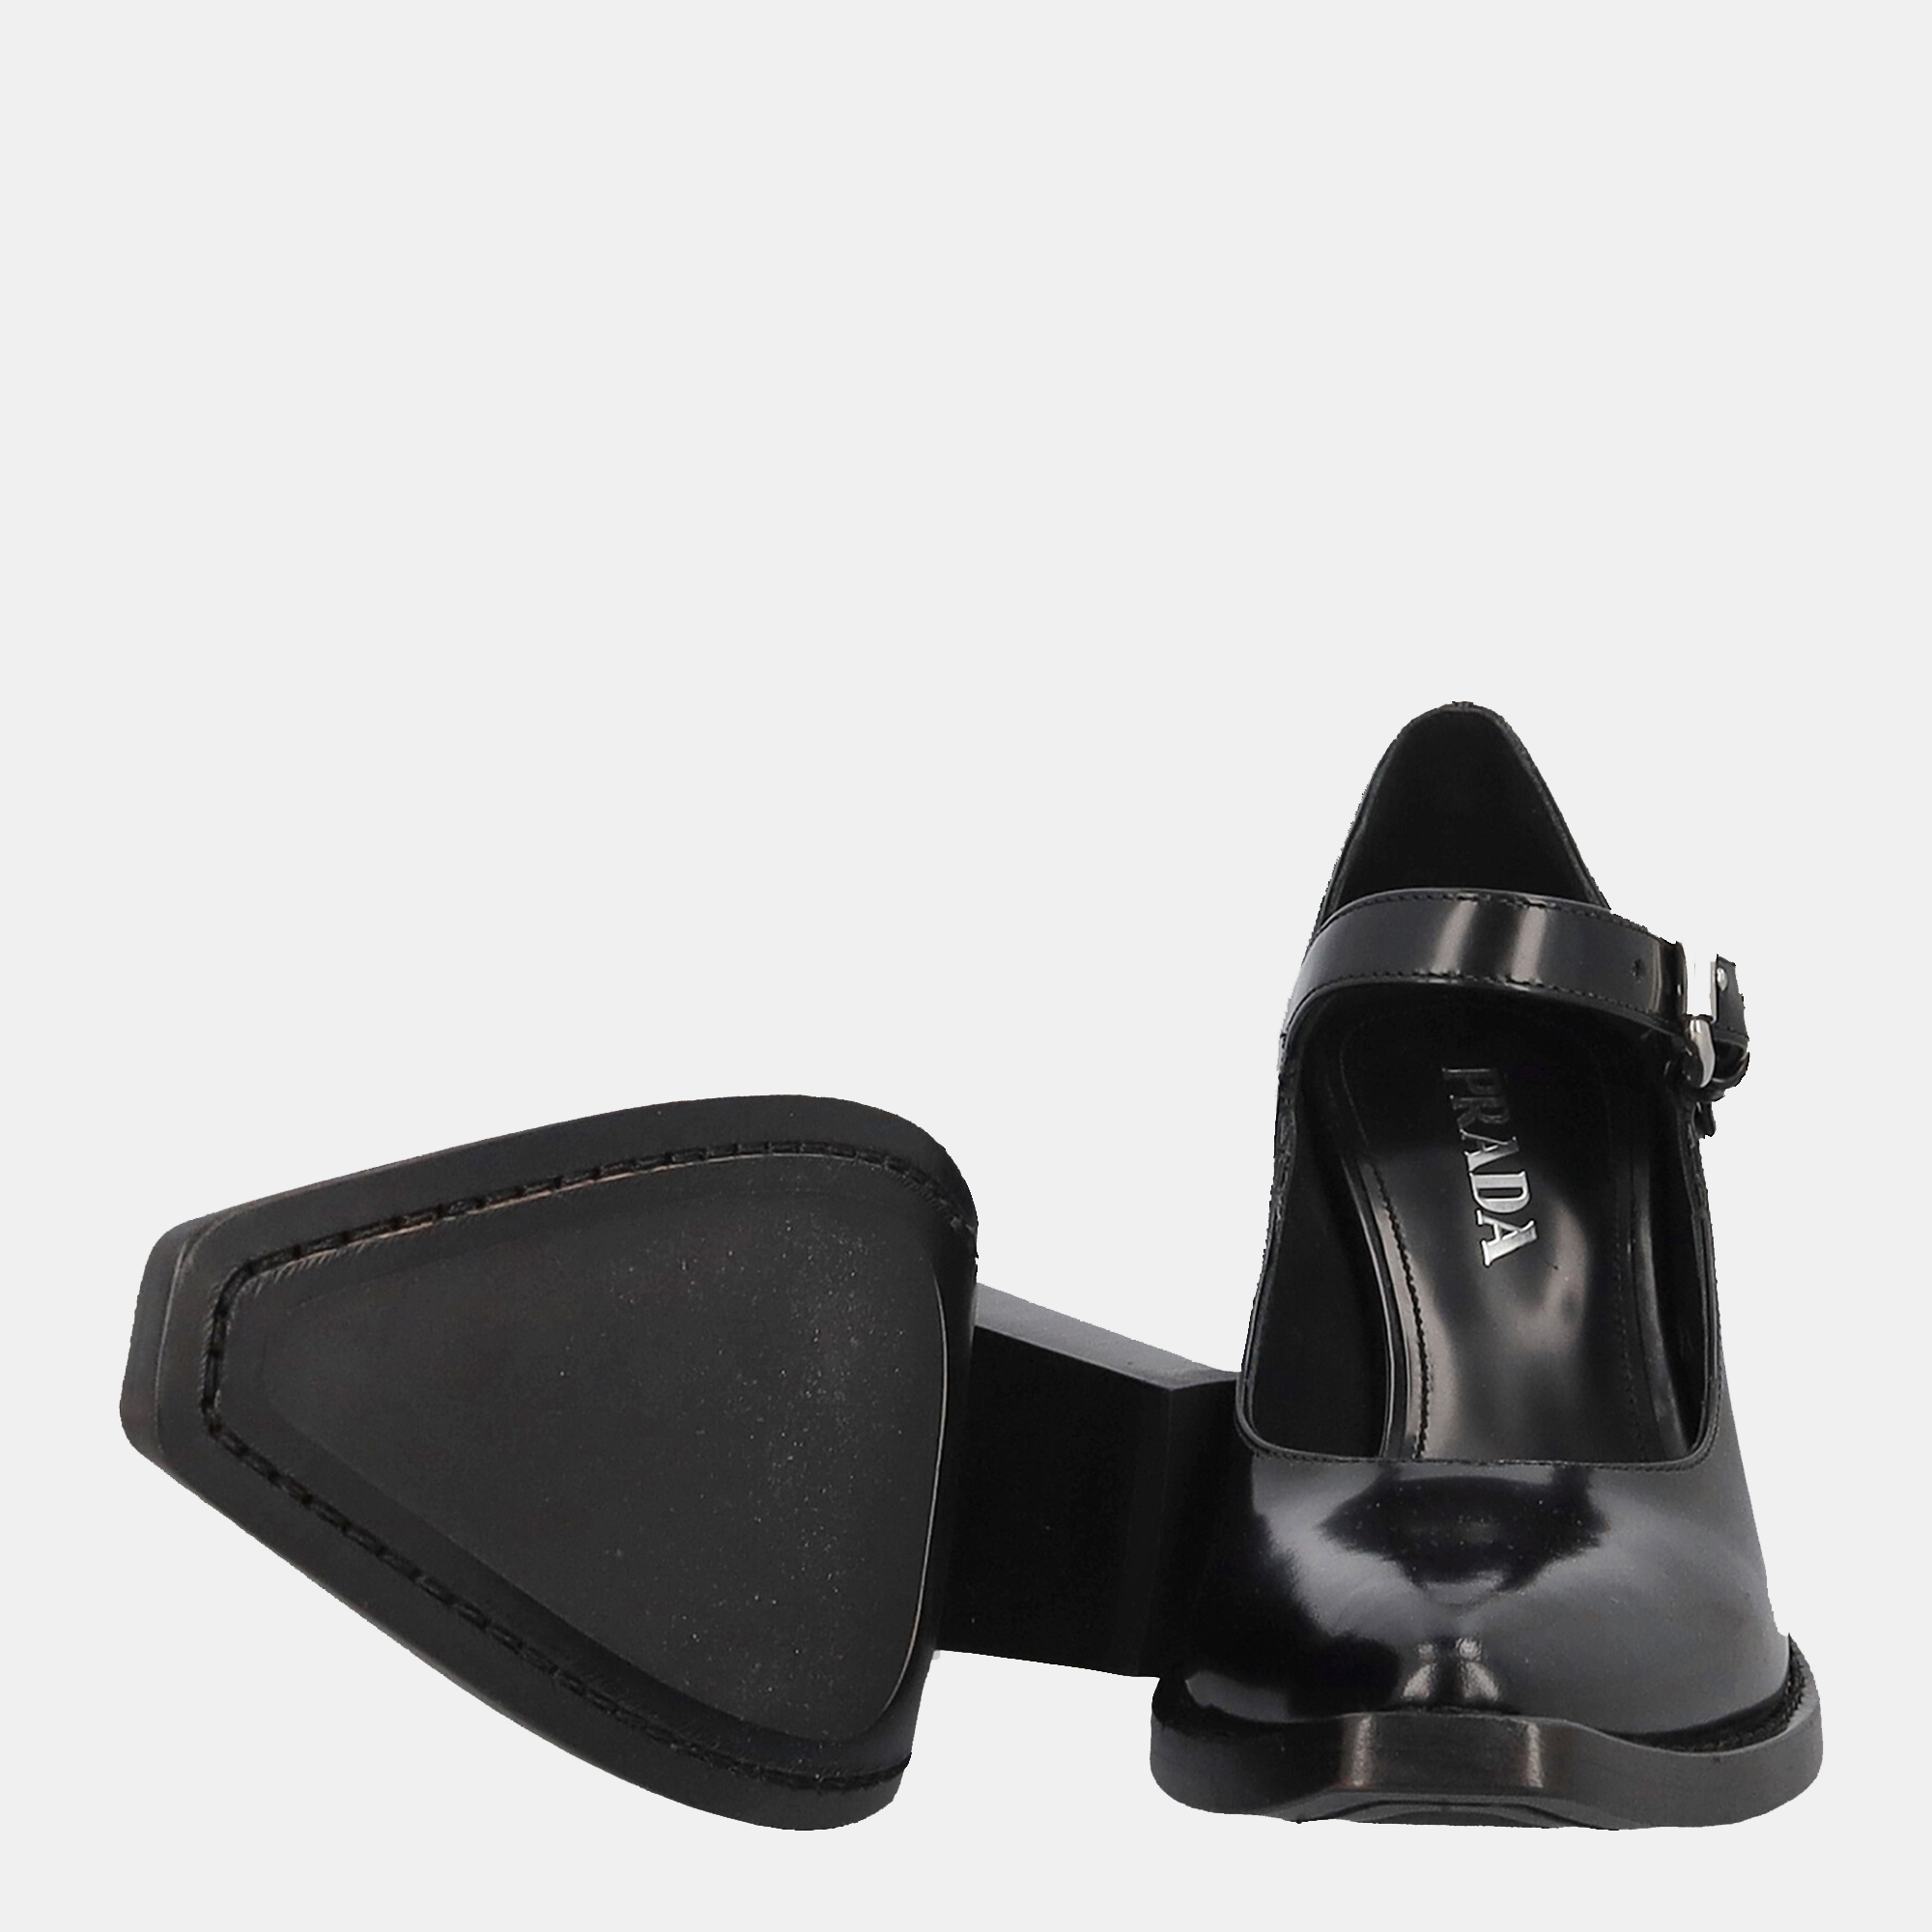 Prada  Women's Leather Heels - Black - EU 37.5